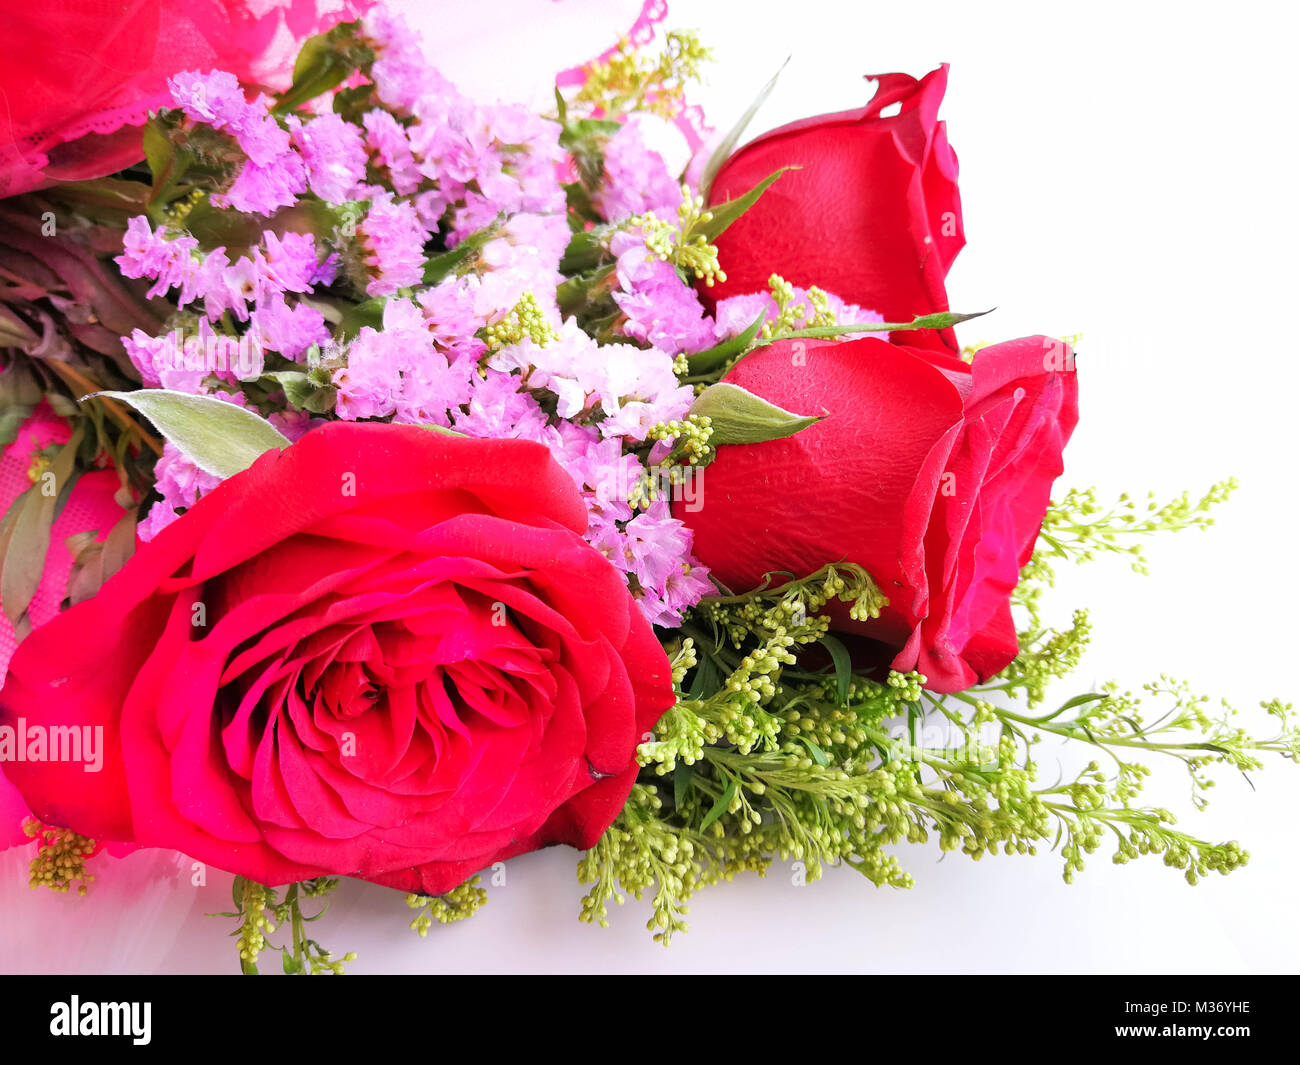 Rote Rosen strauss auf Holz- Hintergrund. Konzept der Valentinstag, Geburtstag, Muttertag, Liebe, Fürsorge und Jubiläen. Stockfoto